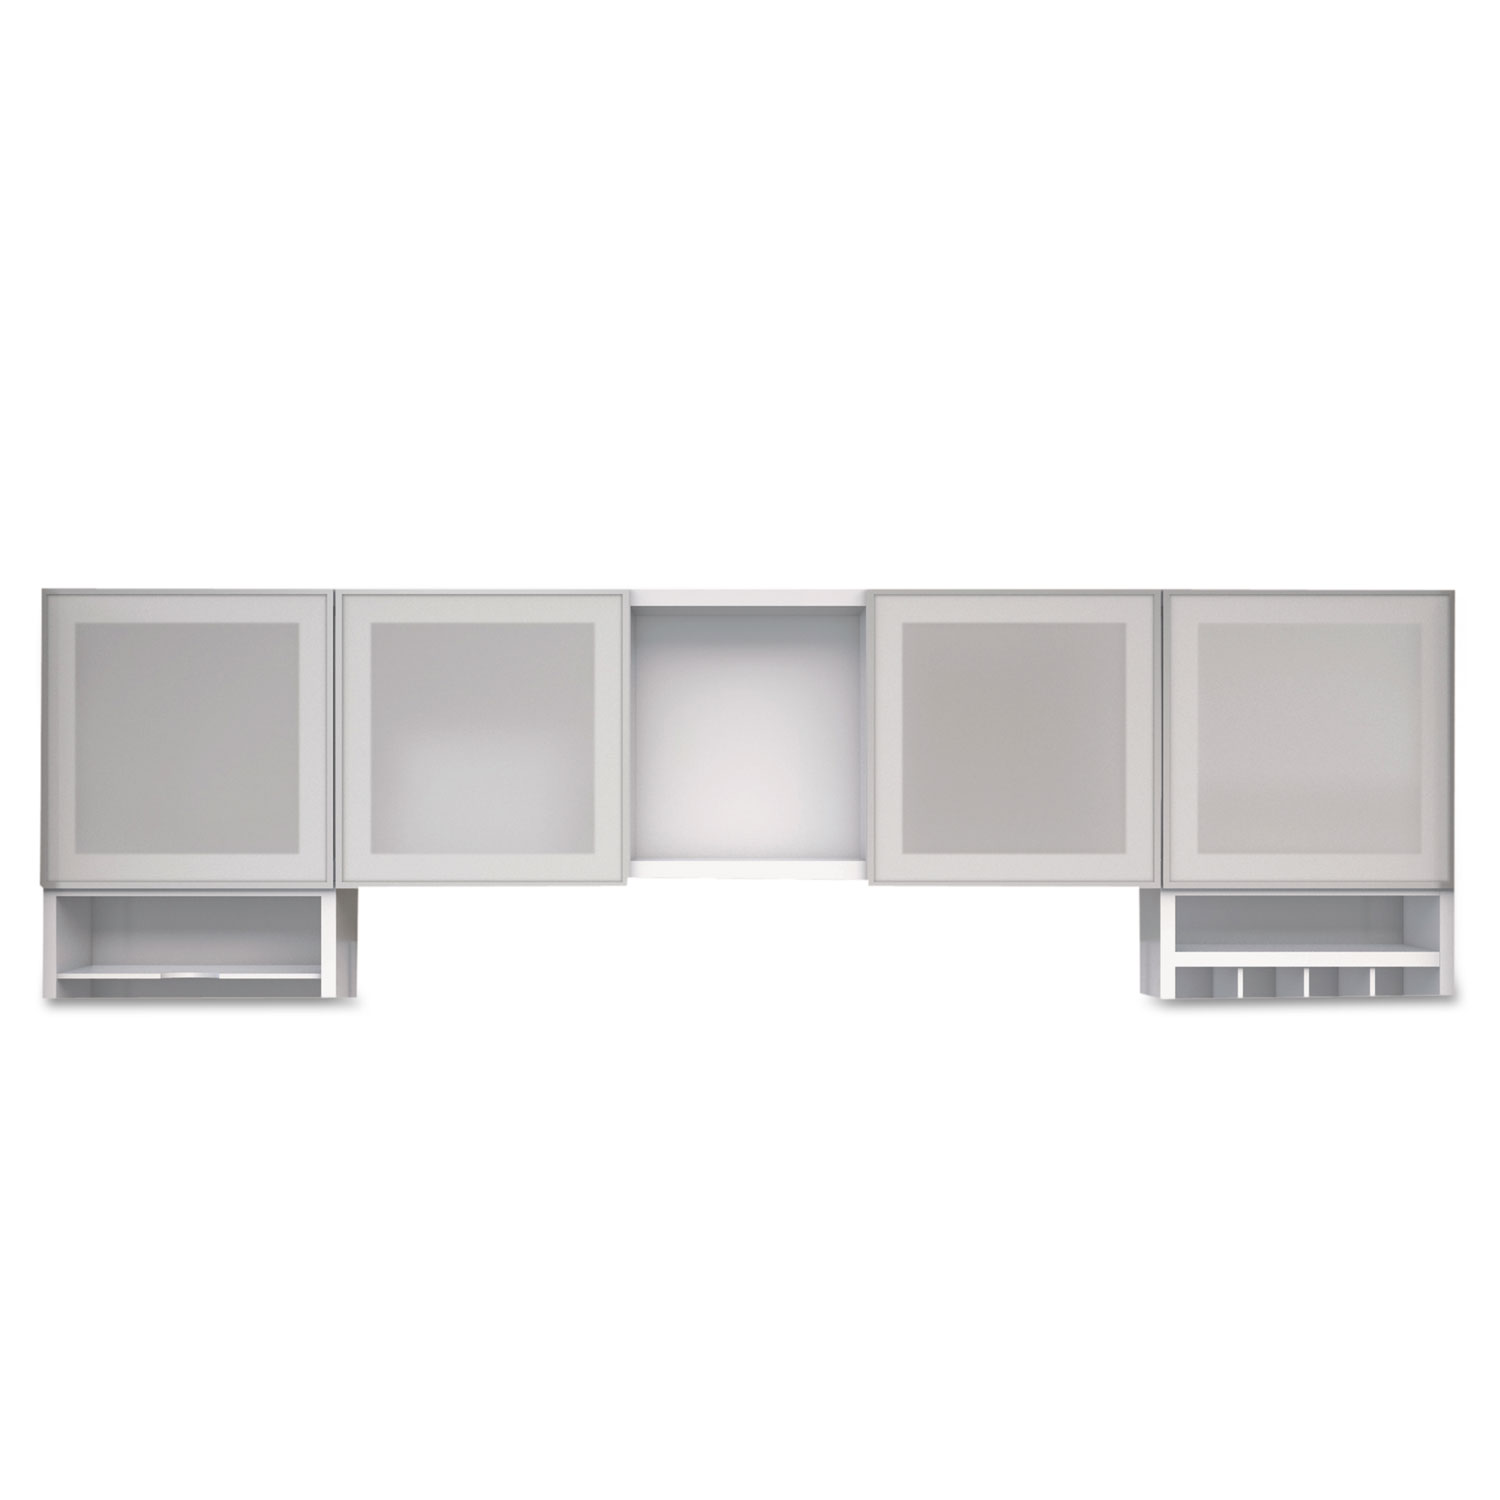 e5 Series Overhead Storage Cabinet, 72w x 15d x 15h, White